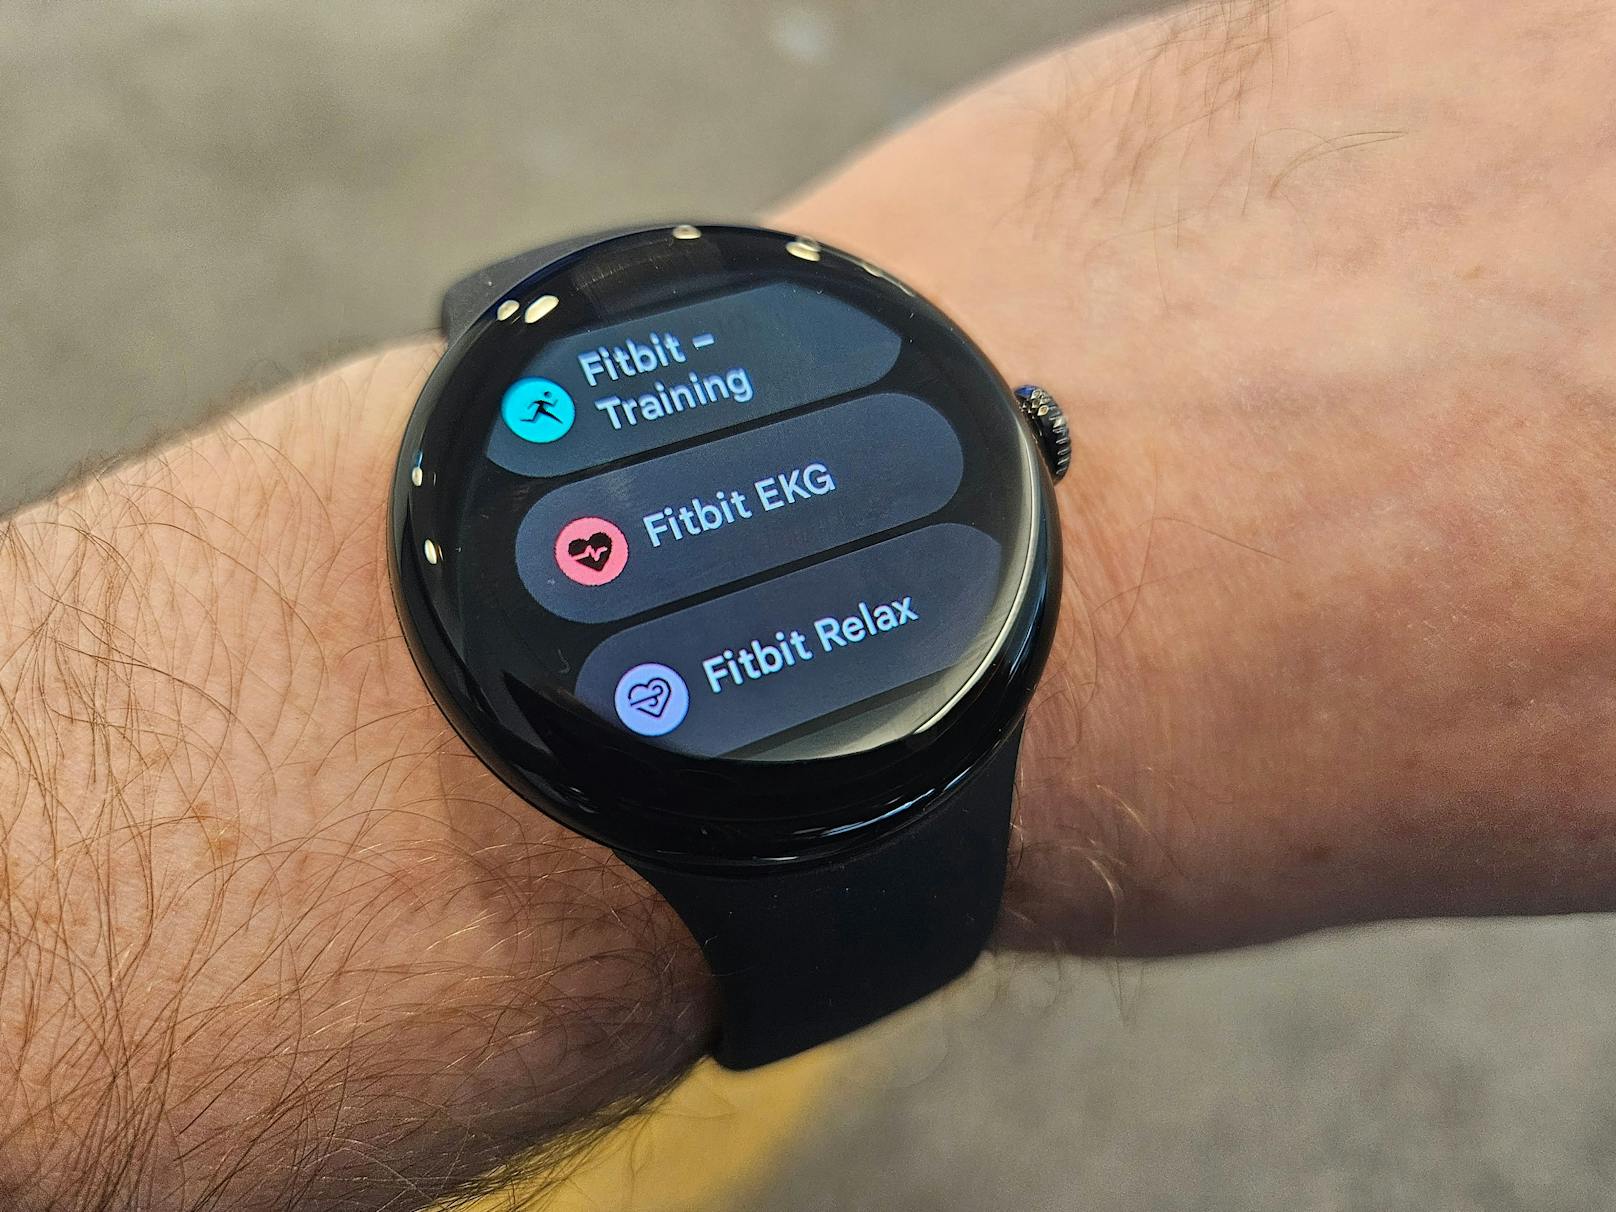 Verbunden werden kann die Watch laut Google "mit den meisten Smartphones mit Android 9.0 oder höher", ...